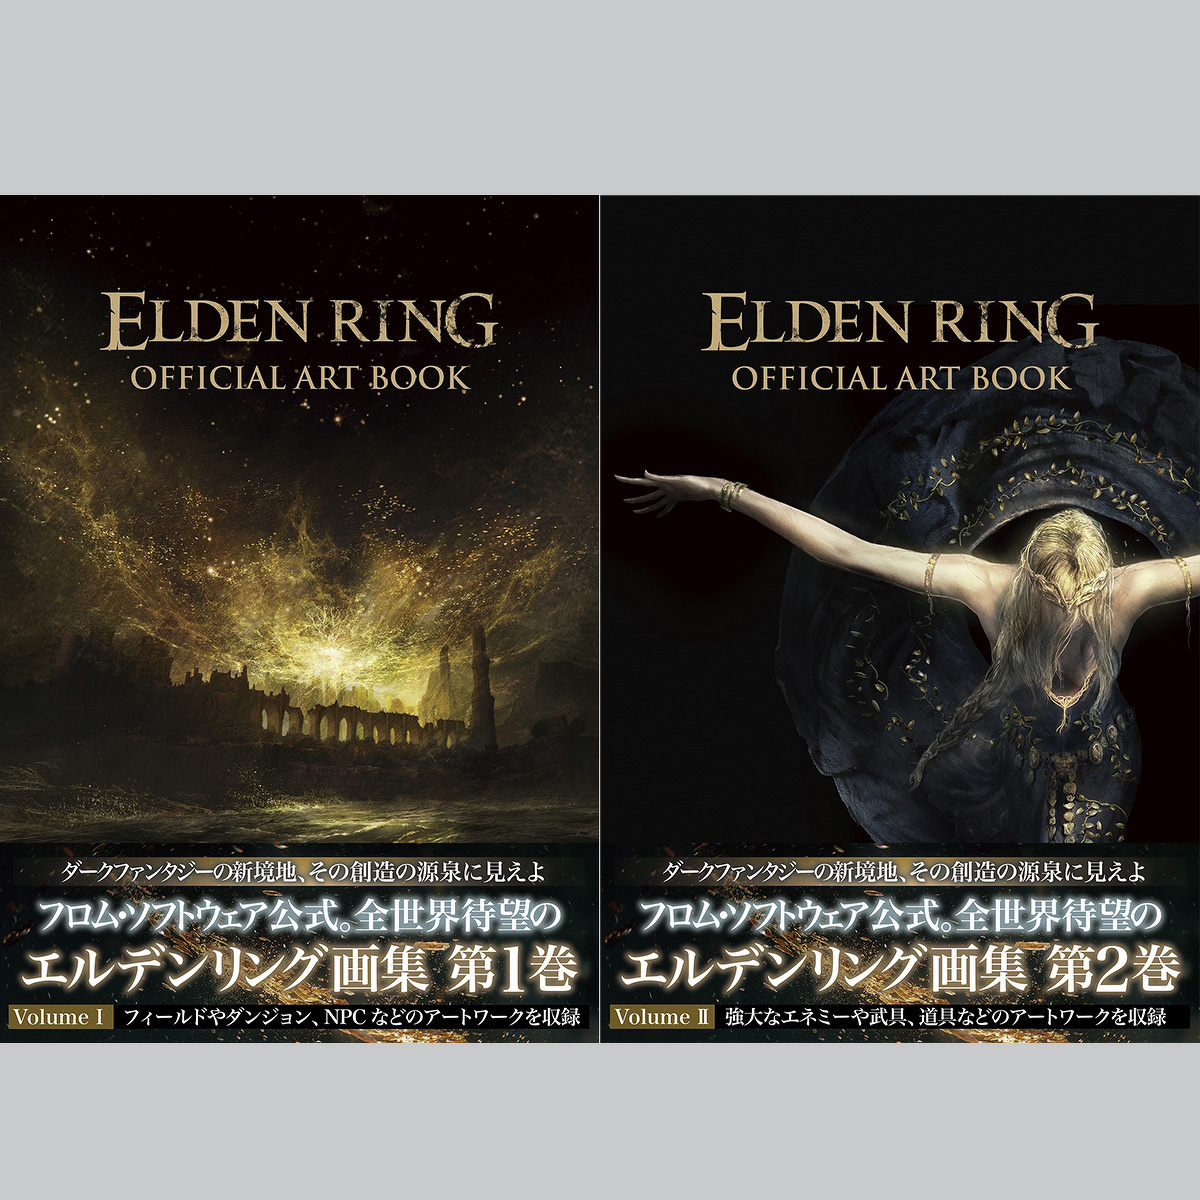 重版記念】『ELDEN RING OFFICIAL ART BOOK 』Vol.1とVol.2のセットが 